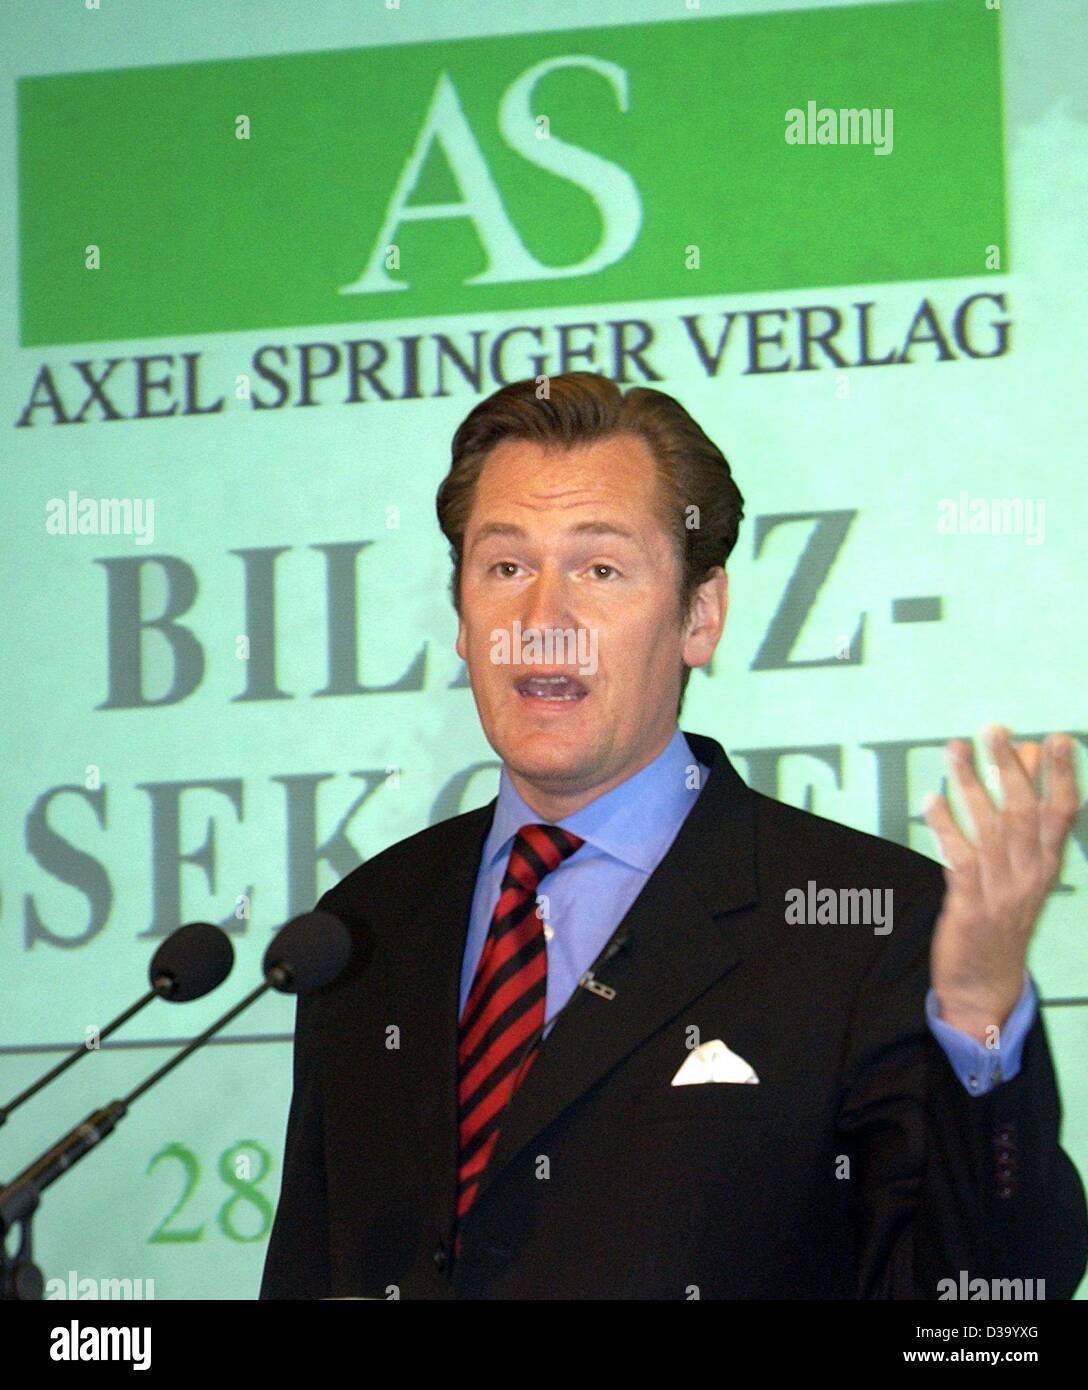 Mathias Doepfner, CEO tedesco del gruppo editoriale Axel Springer, presenta i risultati della società del 2001 nel corso di una conferenza stampa tenutasi a Berlino, 28 maggio 2002. Per la prima volta in cinquant'anni la casa editrice (giornali 'Bild' e 'Welt" ecc.) era in rosso con una perdita di 198 milioni di Euro. Foto Stock